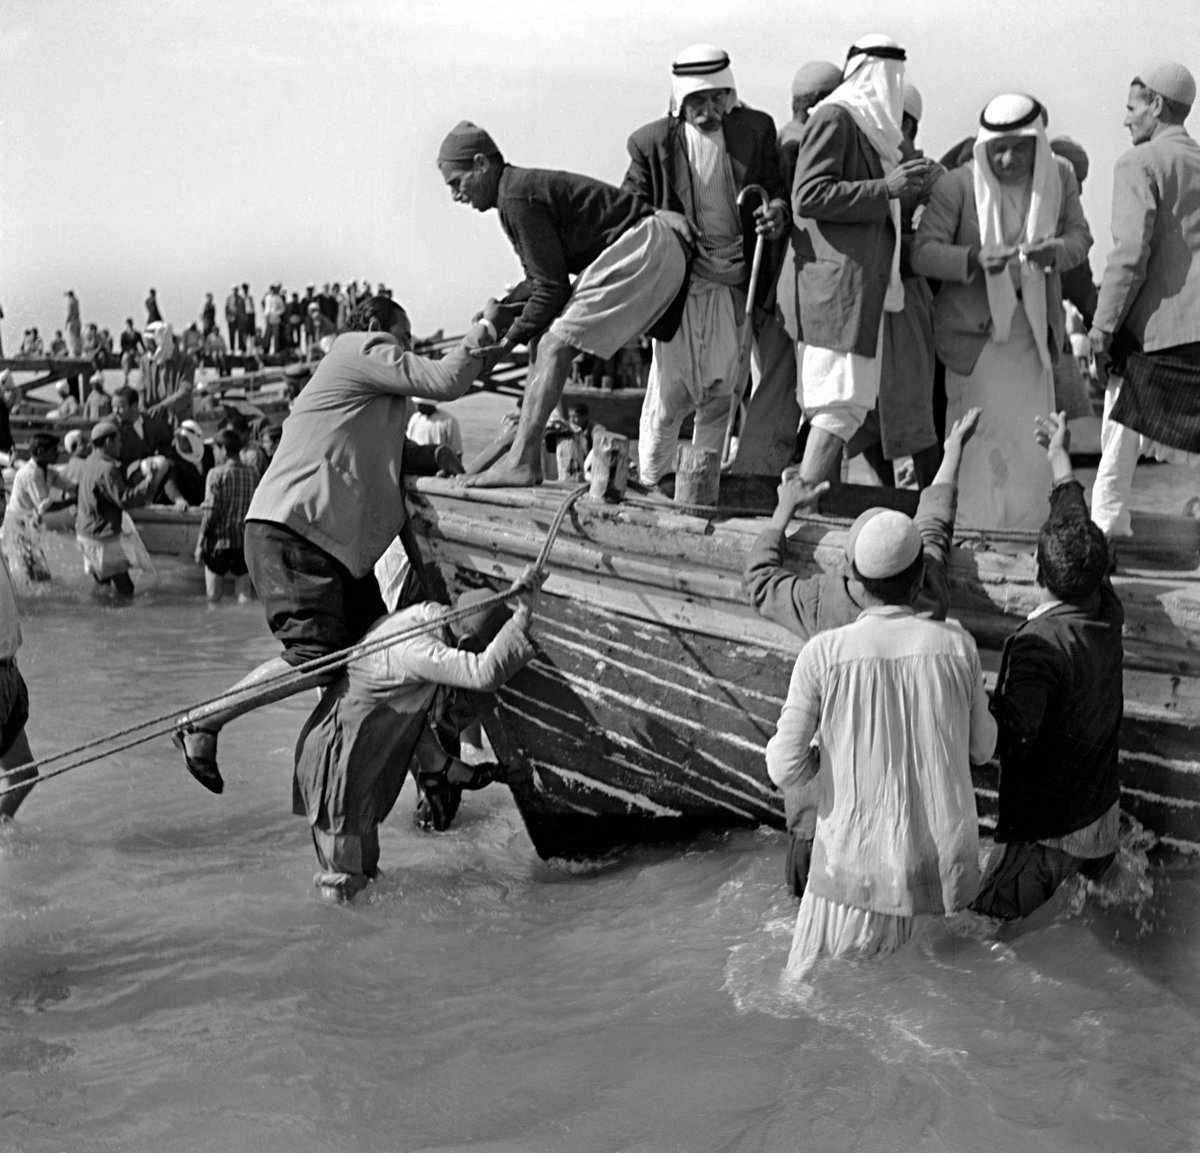 Hoy hace 76 años de la #Nakba. El 15 de mayo de 1948, miles de personas de Palestina tuvieron que huir de sus hogares y de su tierra, emprender el éxodo y convertirse en refugiados. Aunque no lo sabían, era el inicio de un viaje sin retorno.